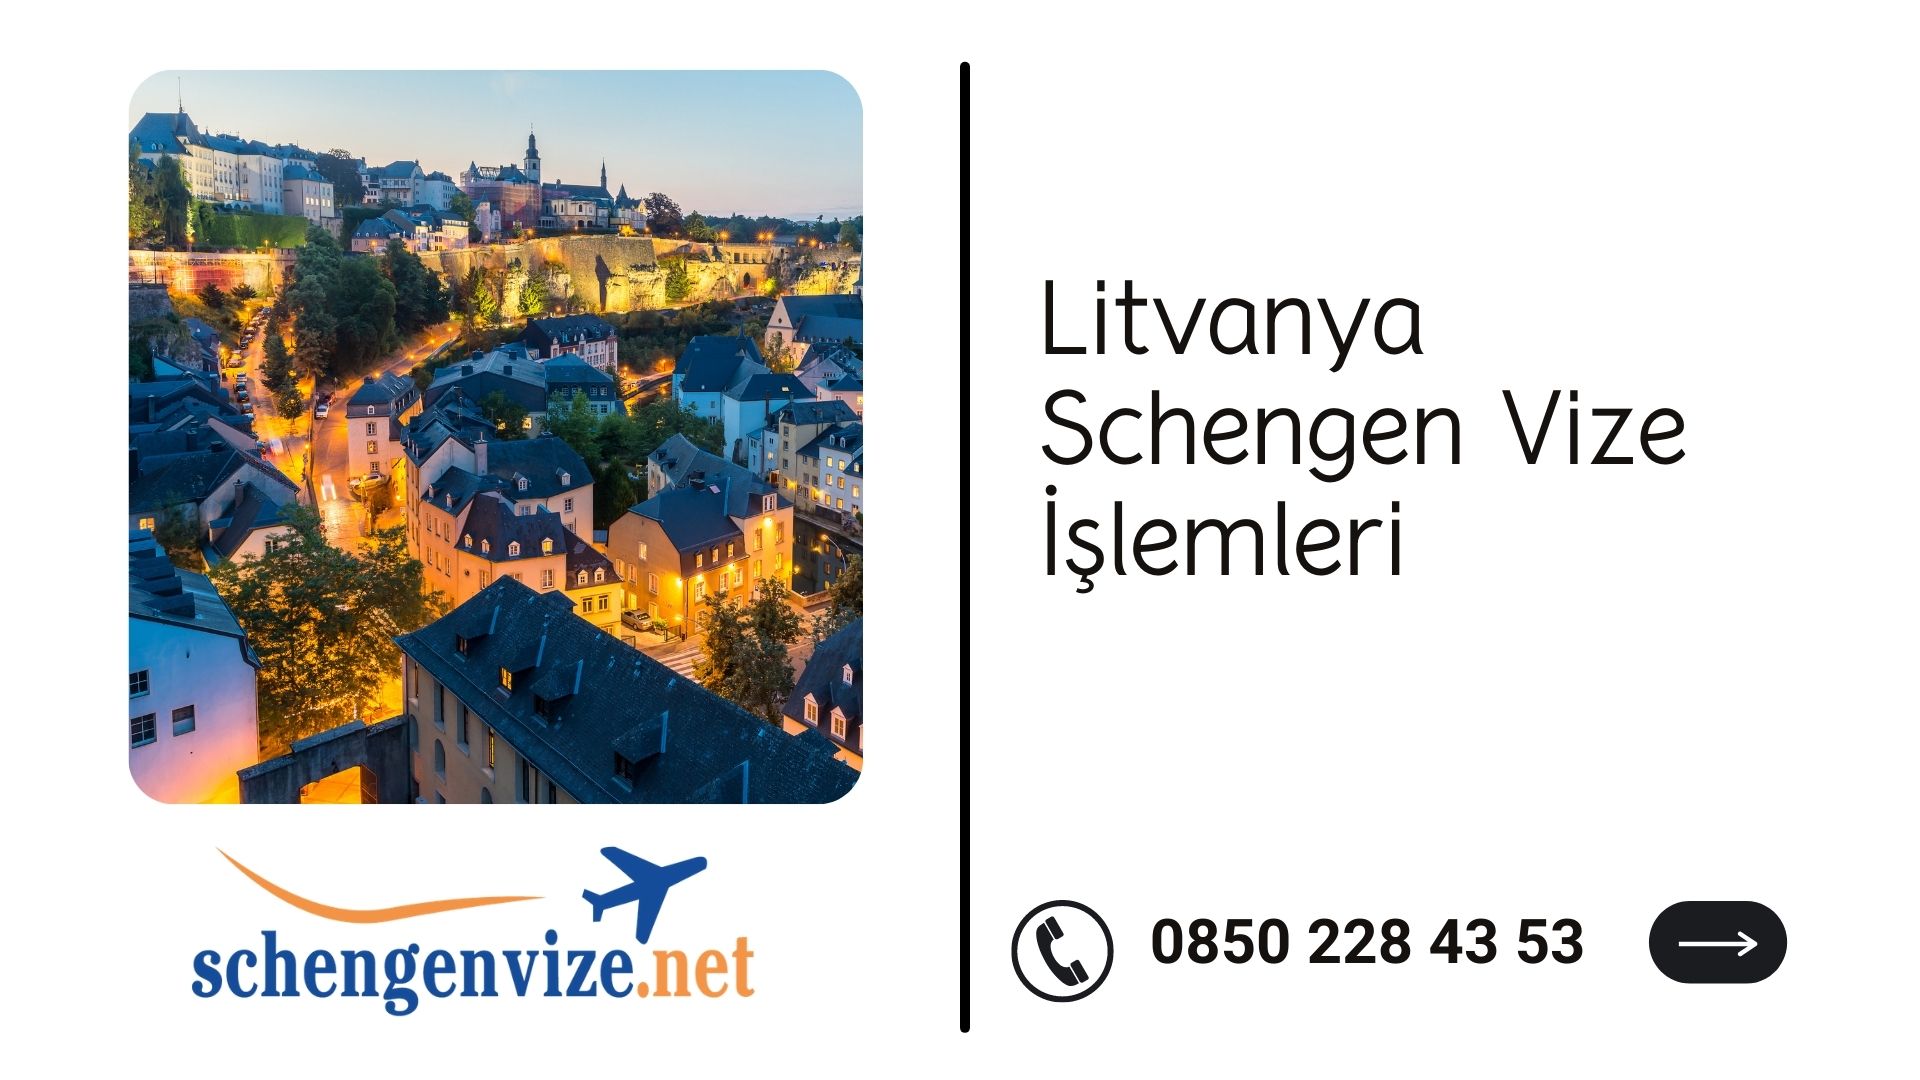 Litvanya Schengen Vize İşlemleri